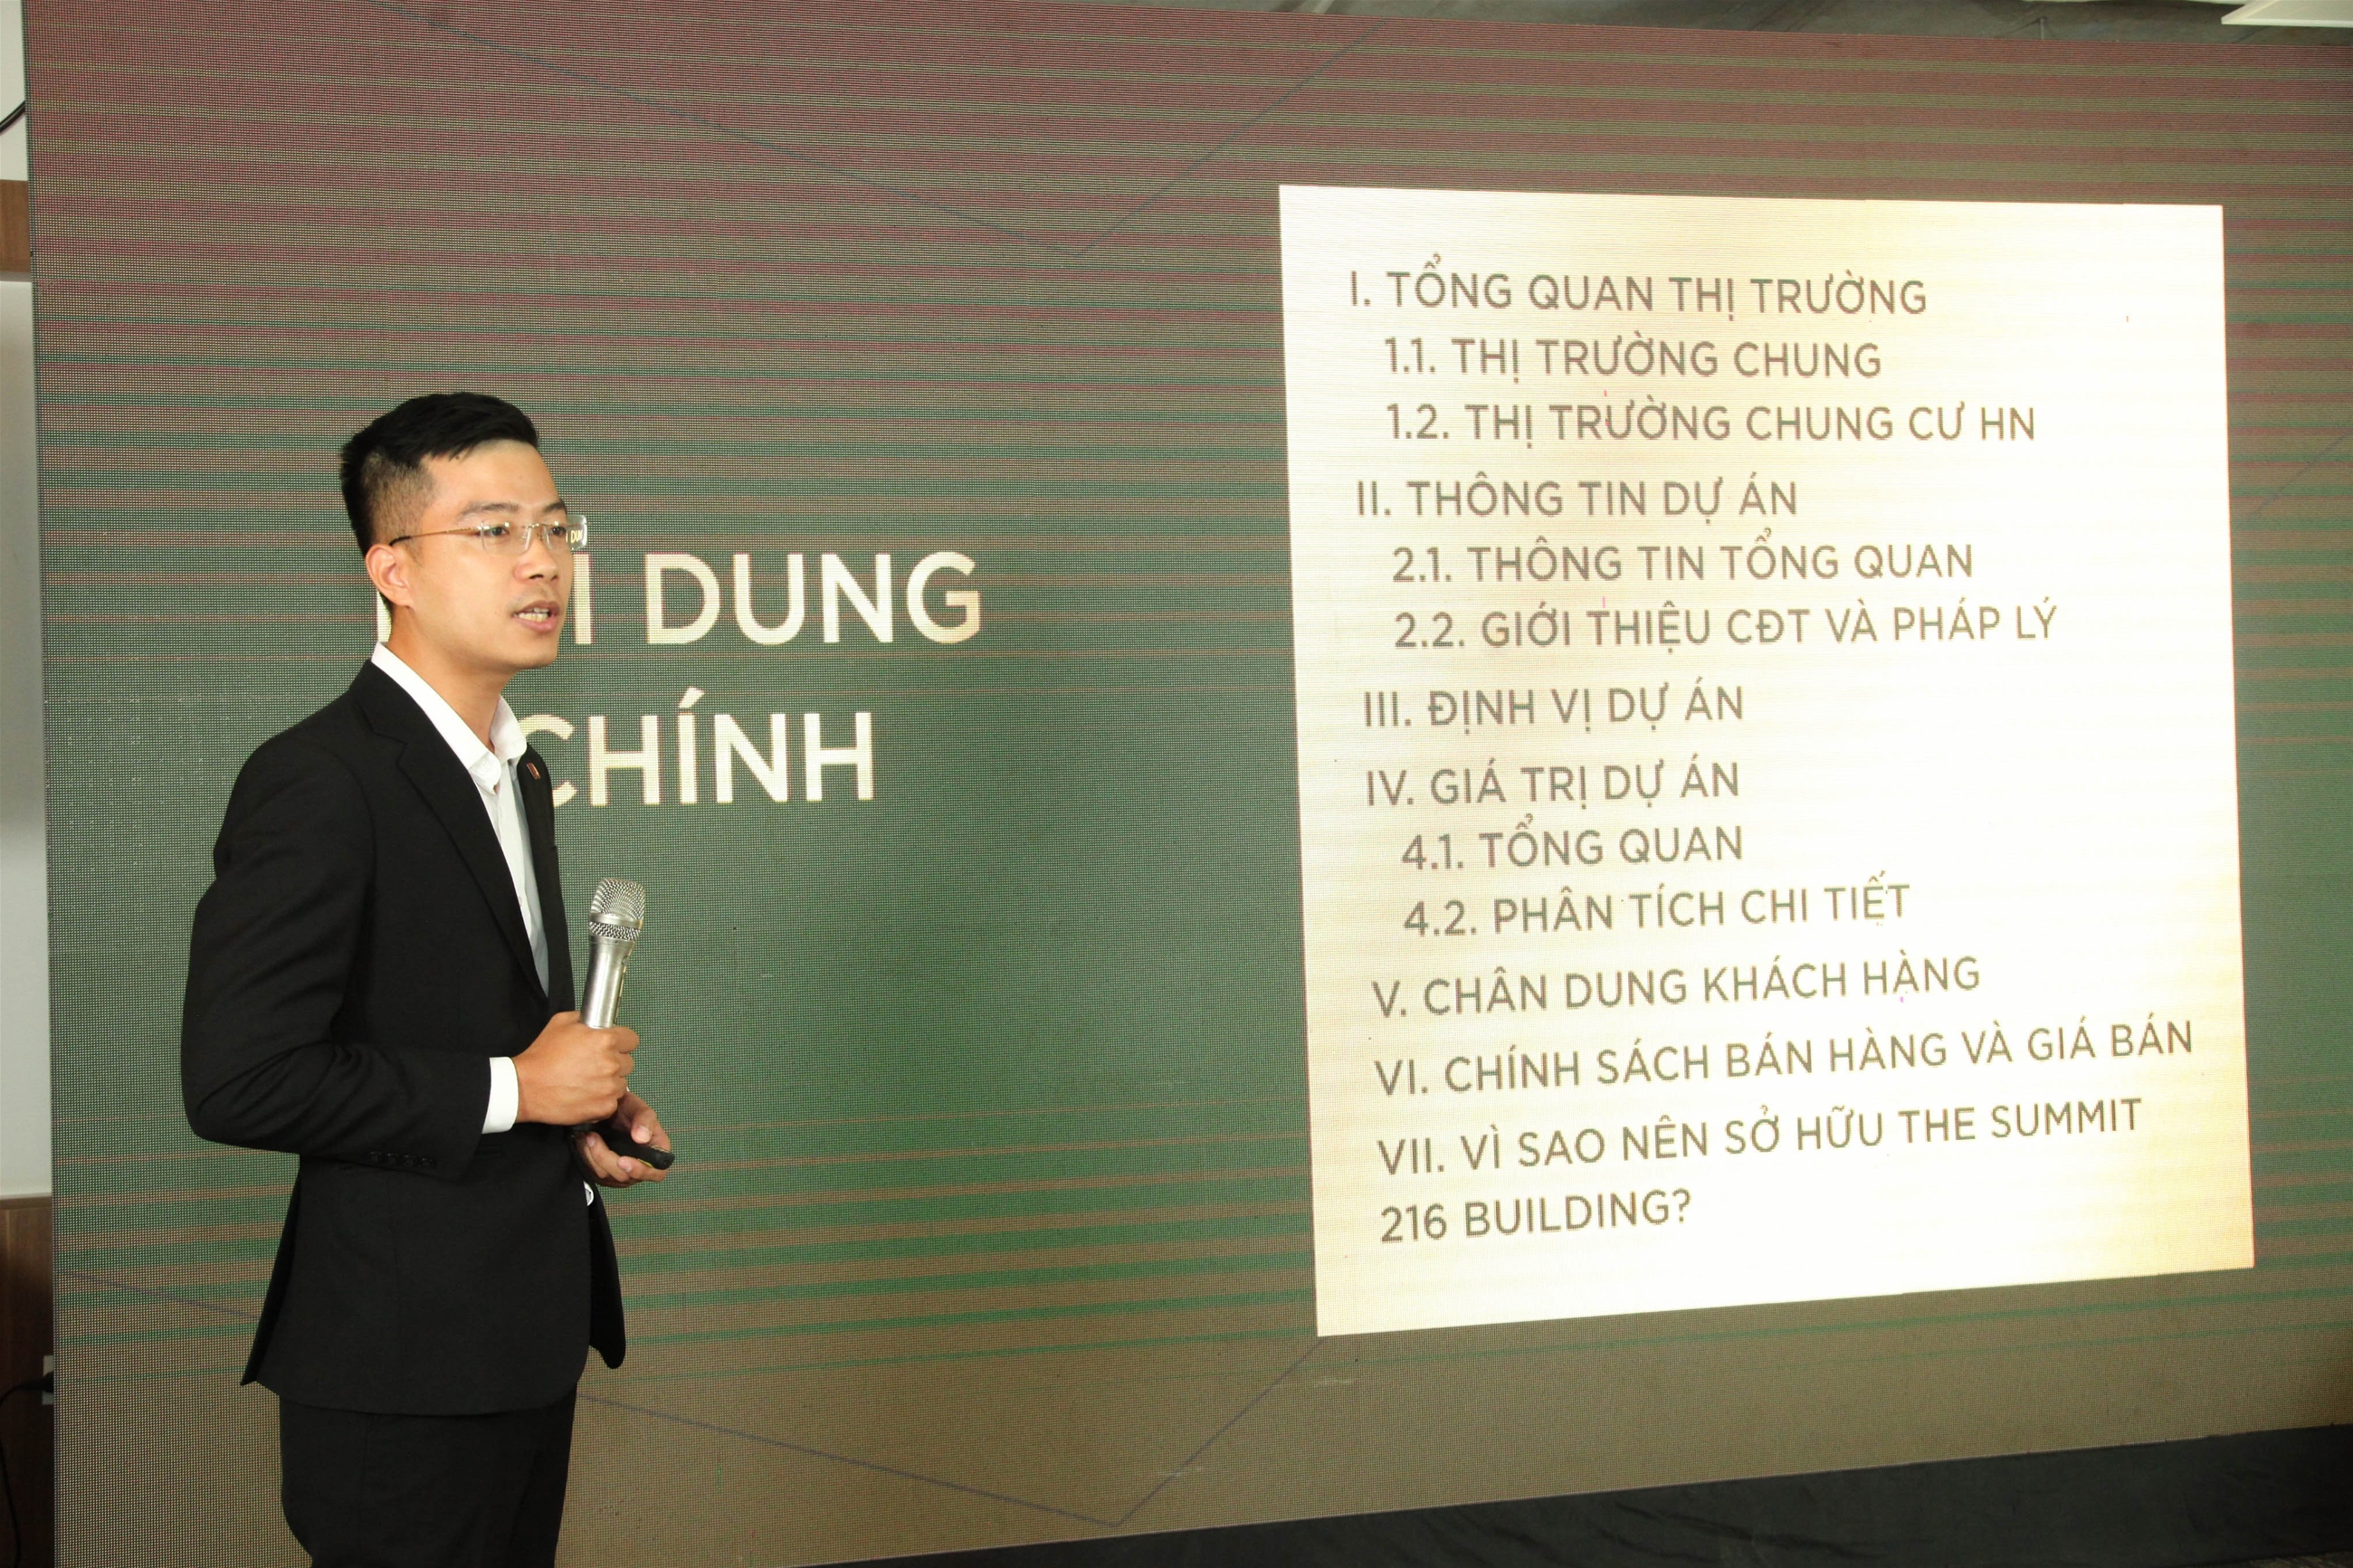 Giám đốc dự án Trần Thanh Hà có đôi lời phát biểu về dự án